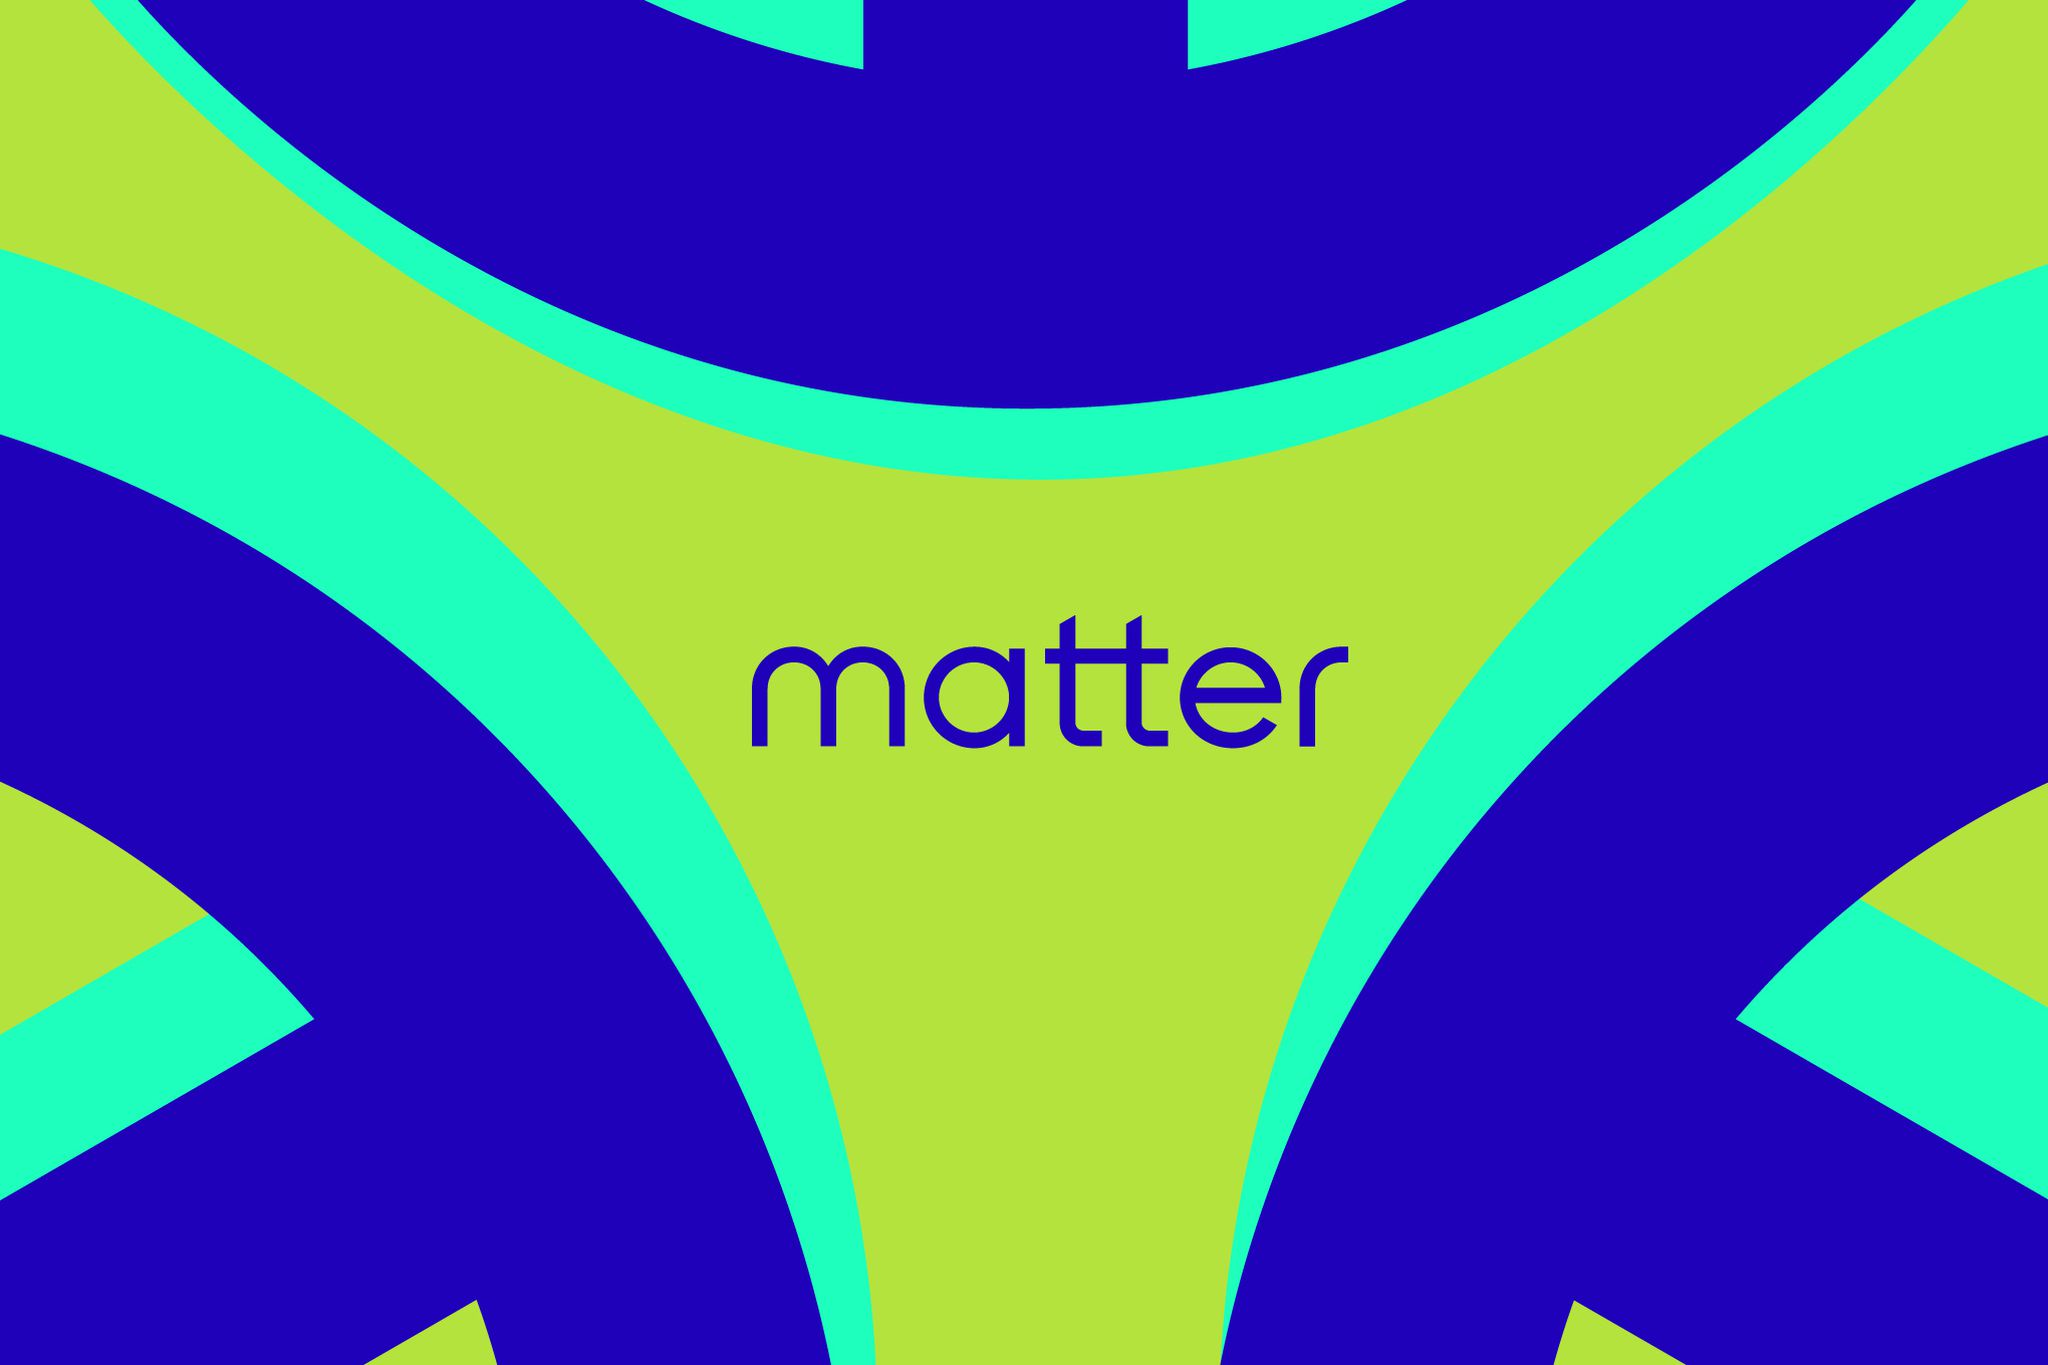 STK138 Matter K Radtke 02